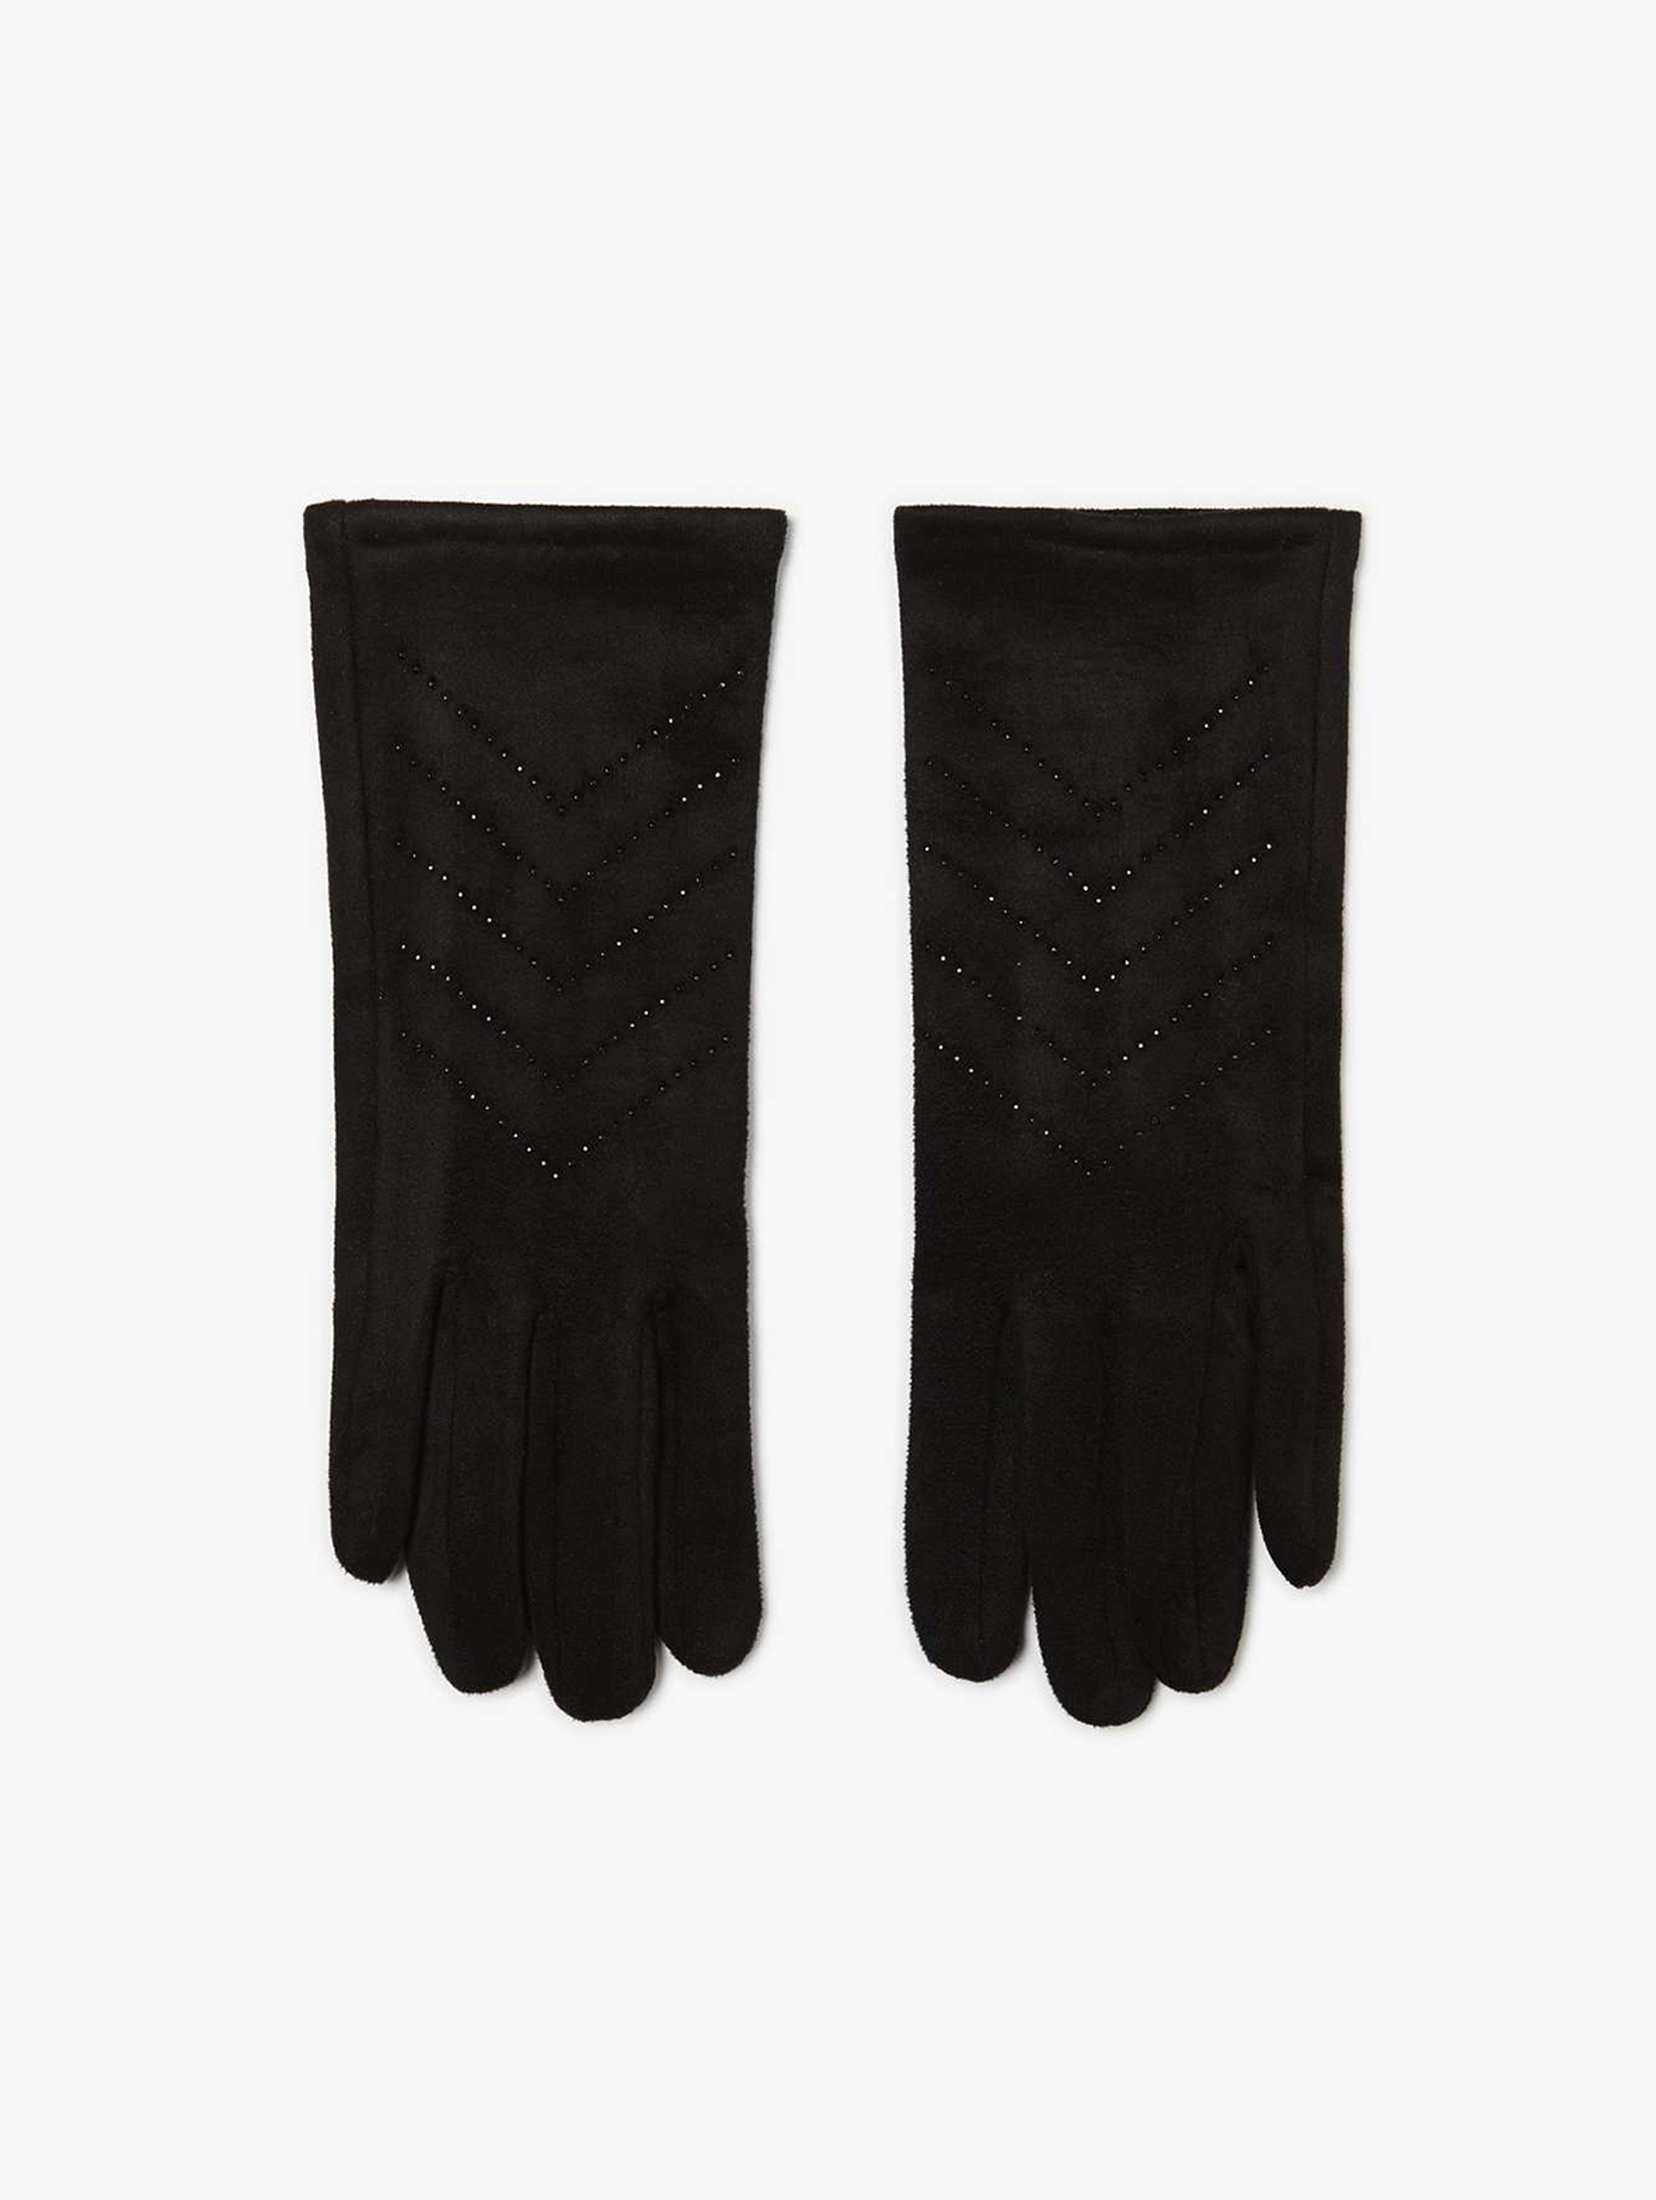 Czarne rękawiczki damskie zamszowe z dżetami